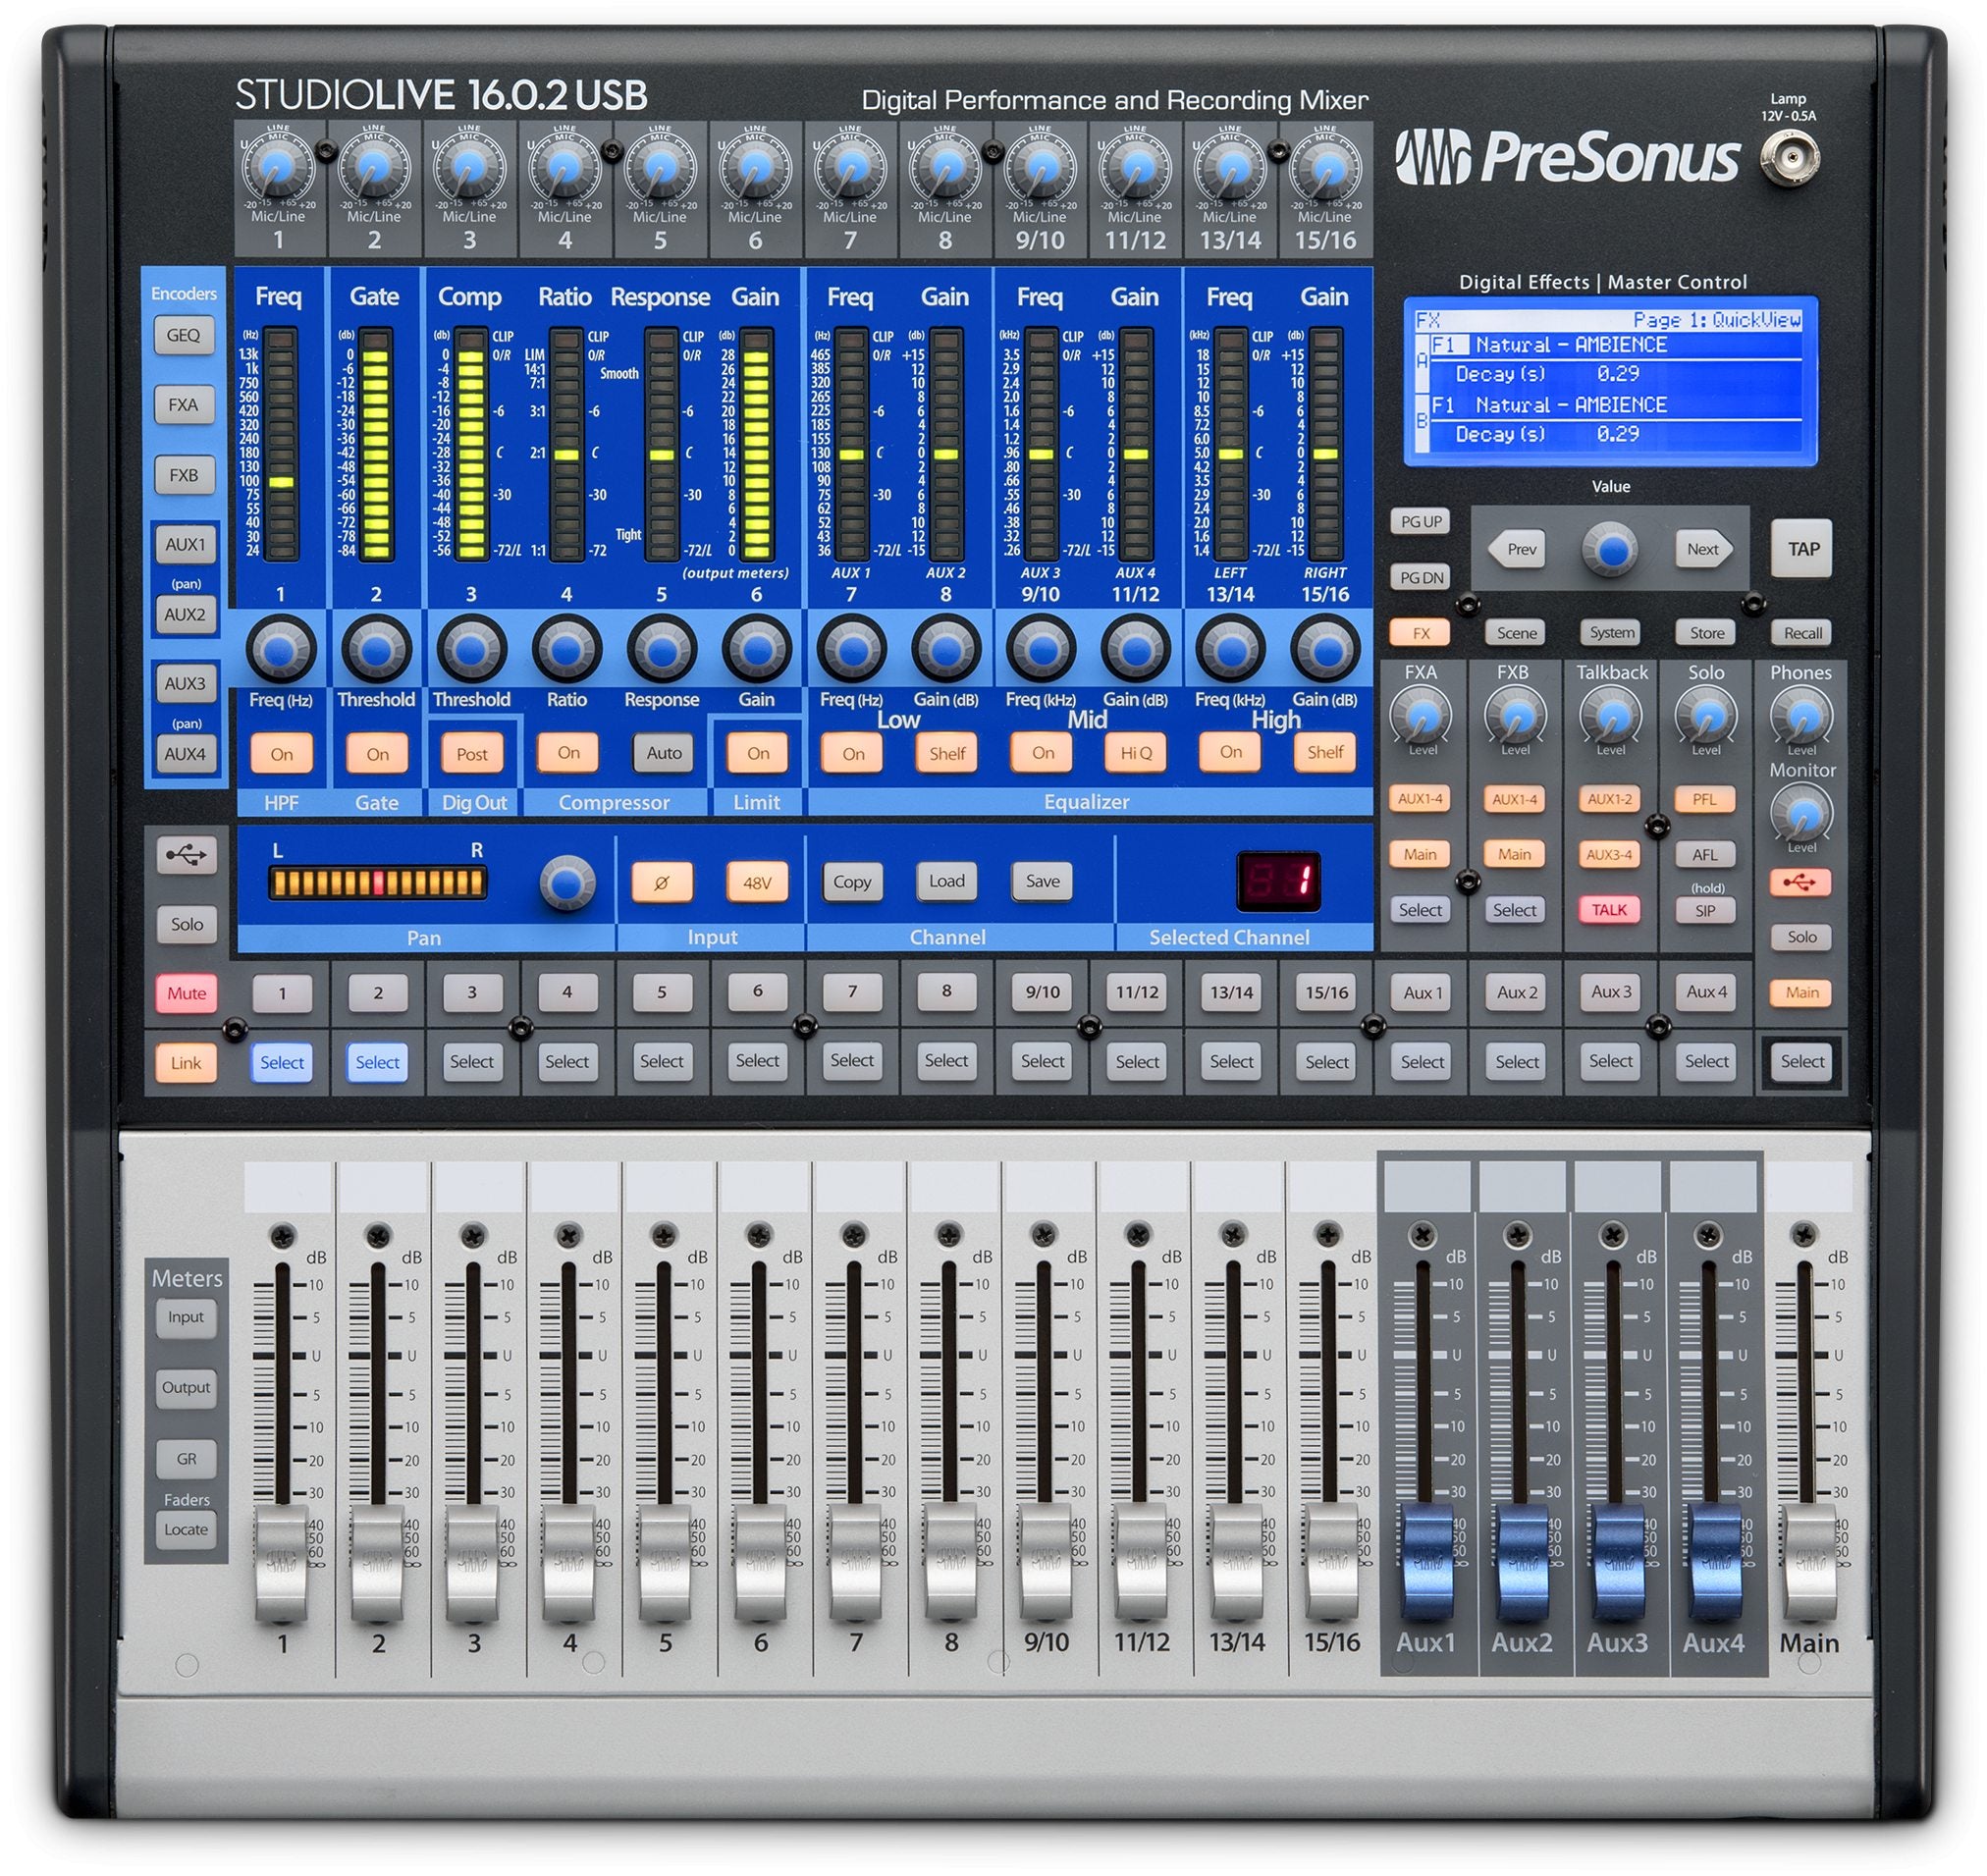 PreSonus StudioLive 16.0.2 USB Mixer - Consoles - Professional Audio Design, Inc | Audio Design, Inc